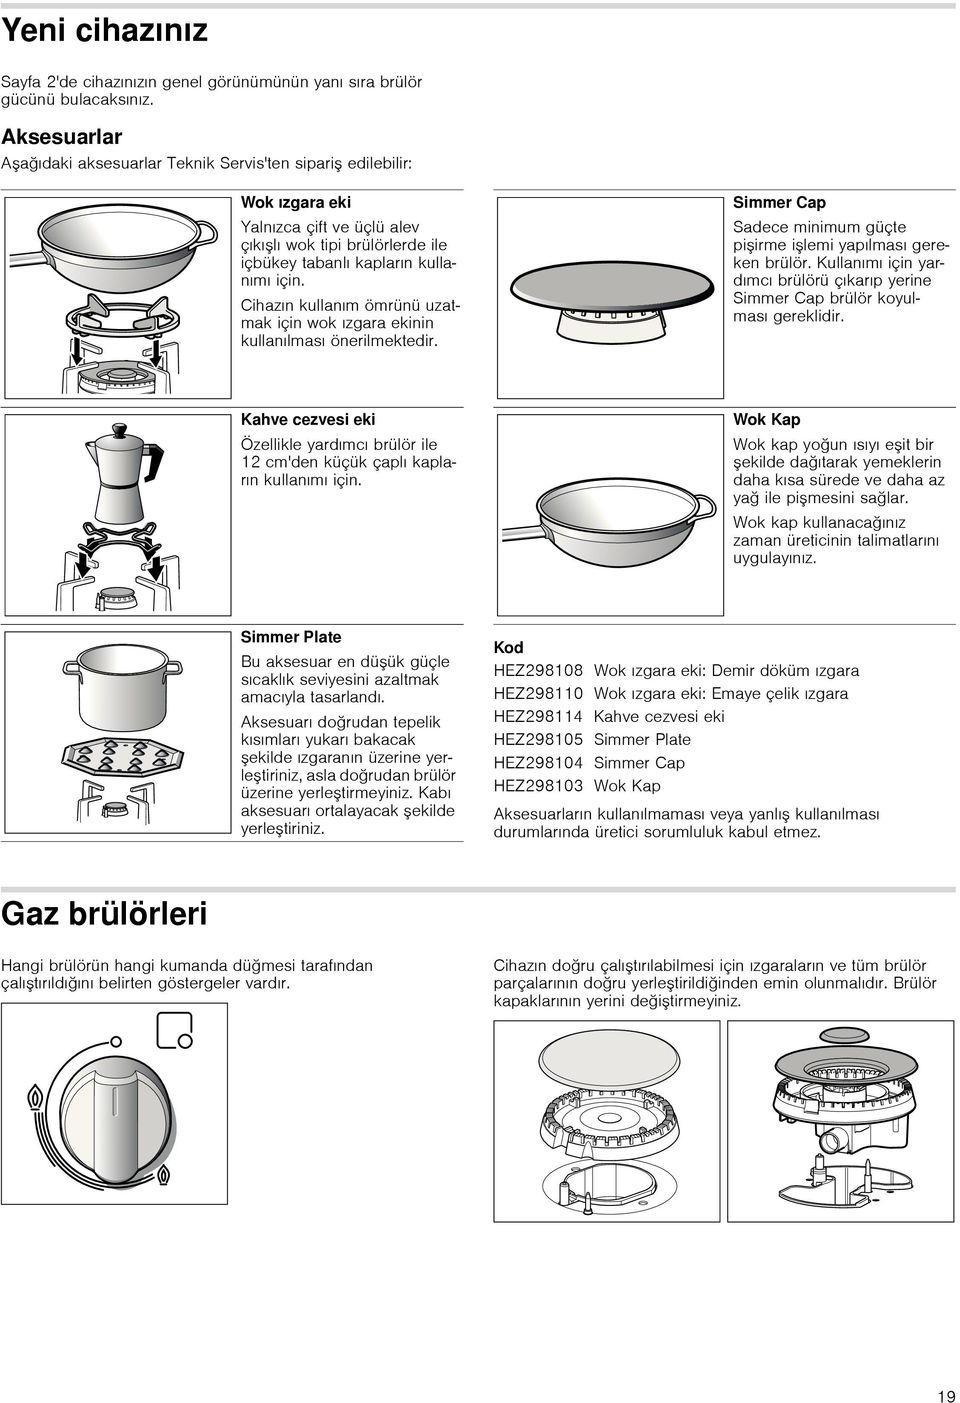 Cihazın kullanım ömrünü uzatmak için wok ızgara ekinin kullanılması önerilmektedir. Simmer Cap Sadece minimum güçte pişirme işlemi yapılması gereken brülör.